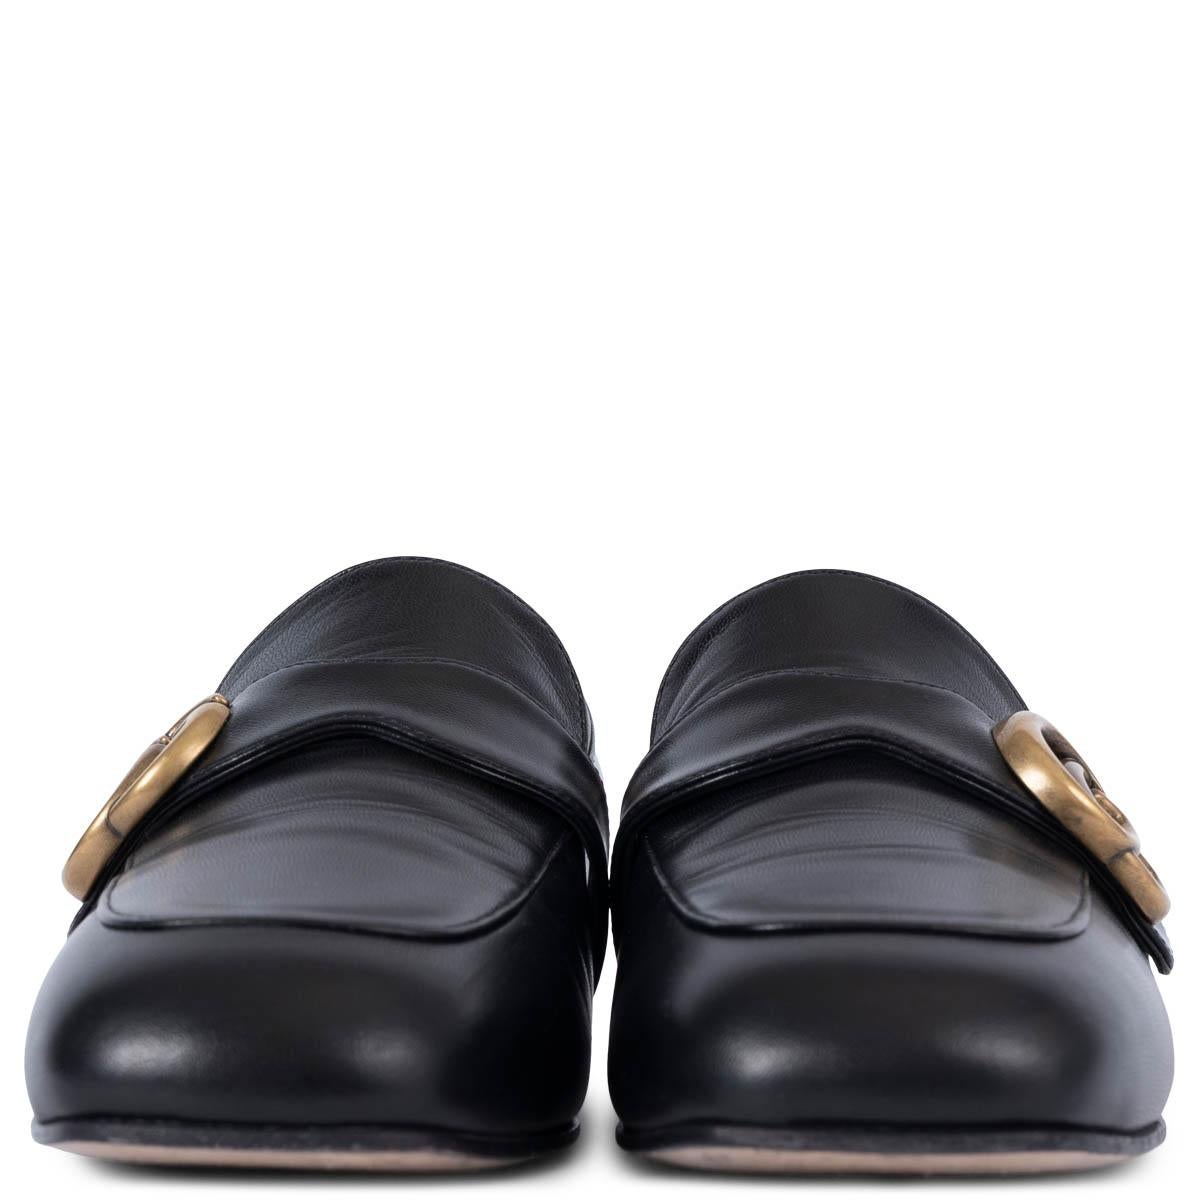 100% authentische Gucci GG Marmont Loafers aus schwarzem, poliertem Ziegenleder. Das Design zeichnet sich durch eine quadratische Mokkazehe und antikgoldfarbene Logo-Hardware am Vorderblatt aus. Sie wurden getragen und sind in ausgezeichnetem